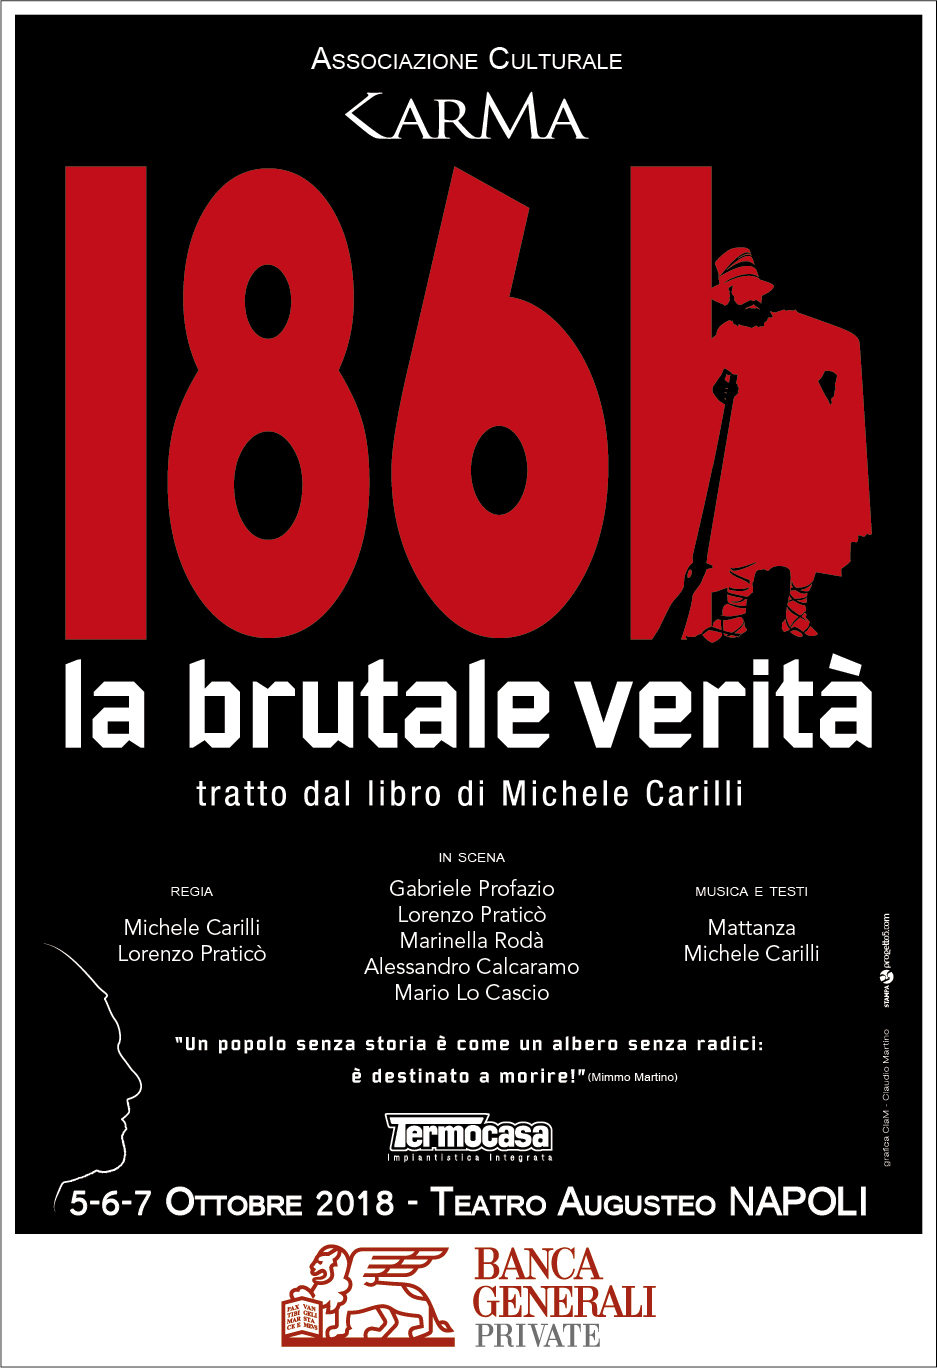 Al Teatro Augusteo di Napoli, da venerdì 5 a domenica 7 ottobre, sarà in scena lo spettacolo “1861 la brutale verità”.